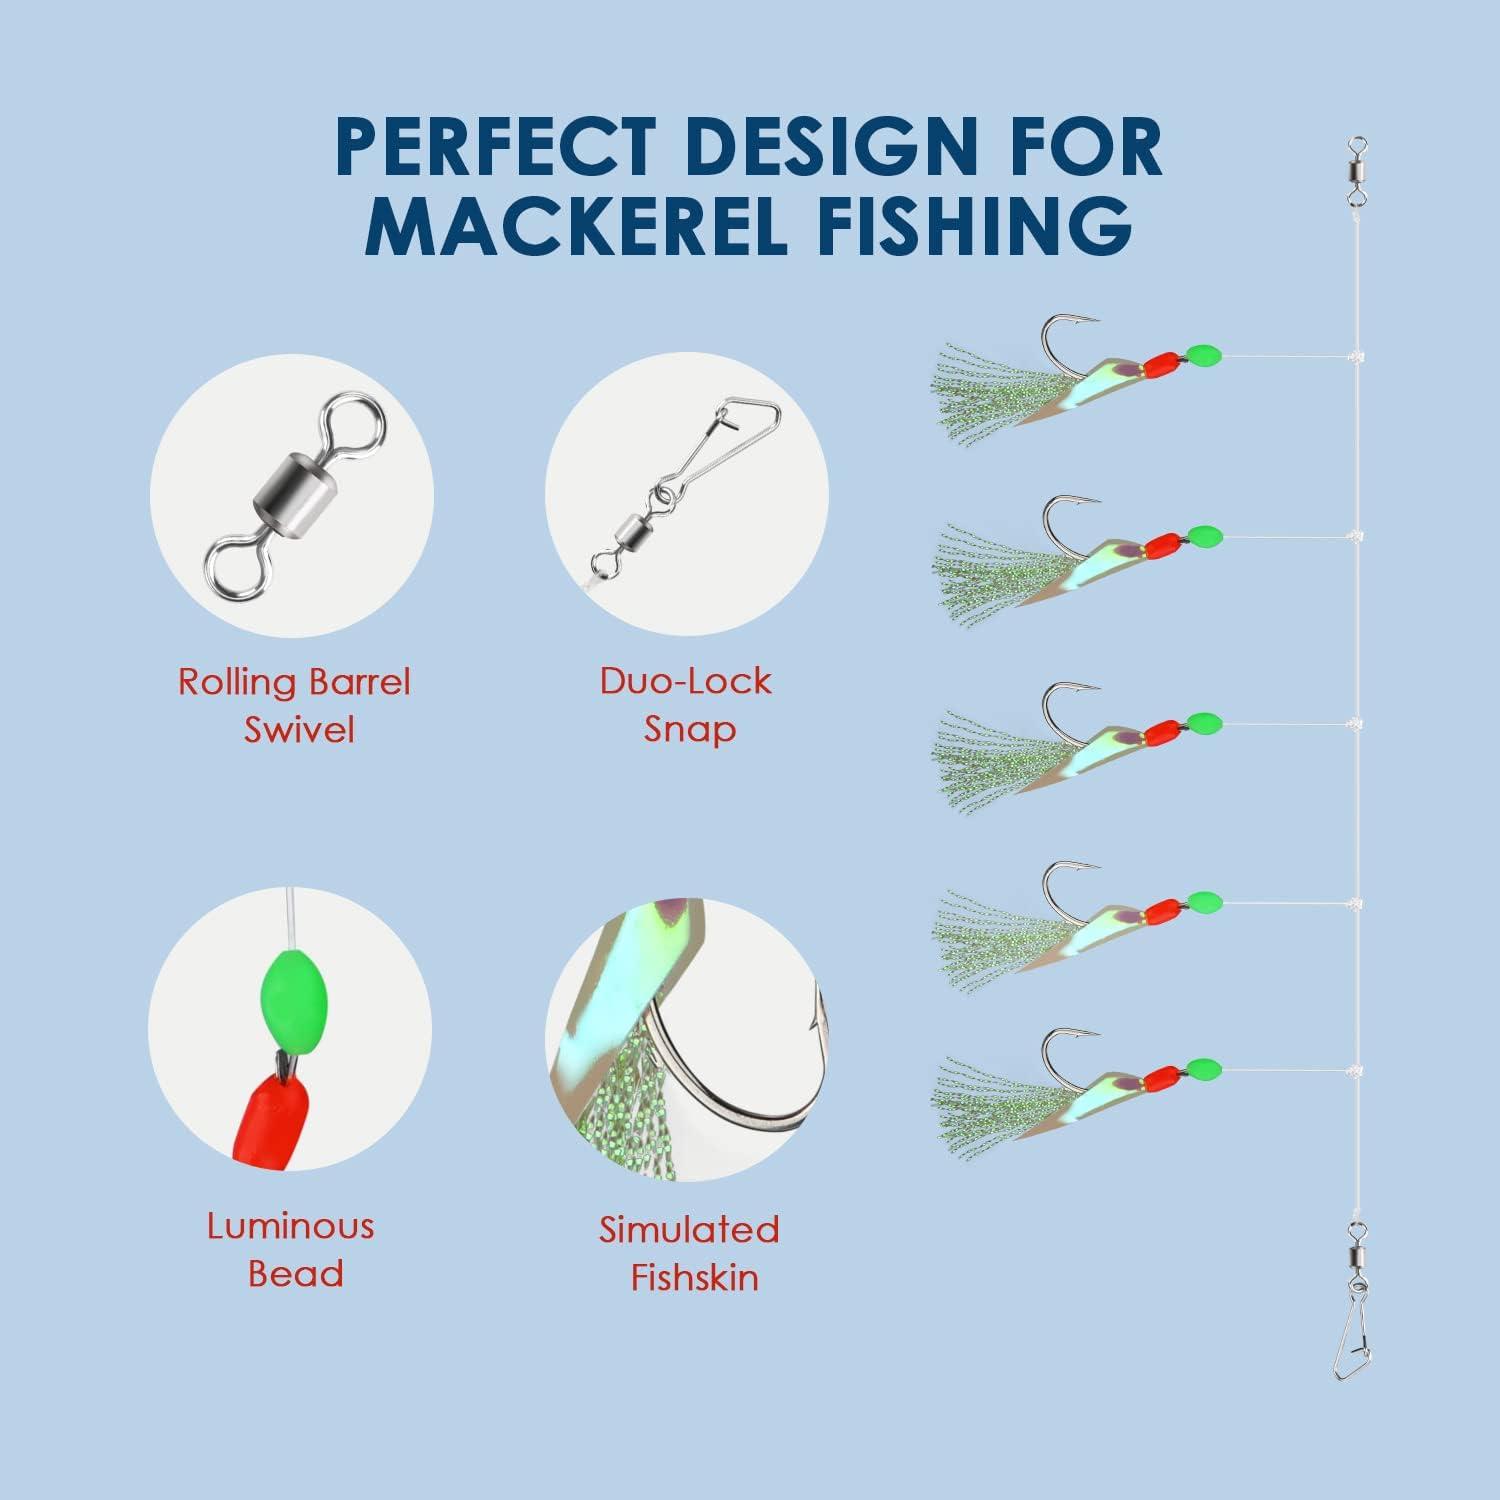 ETERNALLY 6Pcs/set Mackerel Feathers Sabiki Rig Hook Night Fishing Carbon  Steels Luminous String Hooks Fishing Accessories Glow Dark Sabiki Lure  Saltwater Sea Fishing